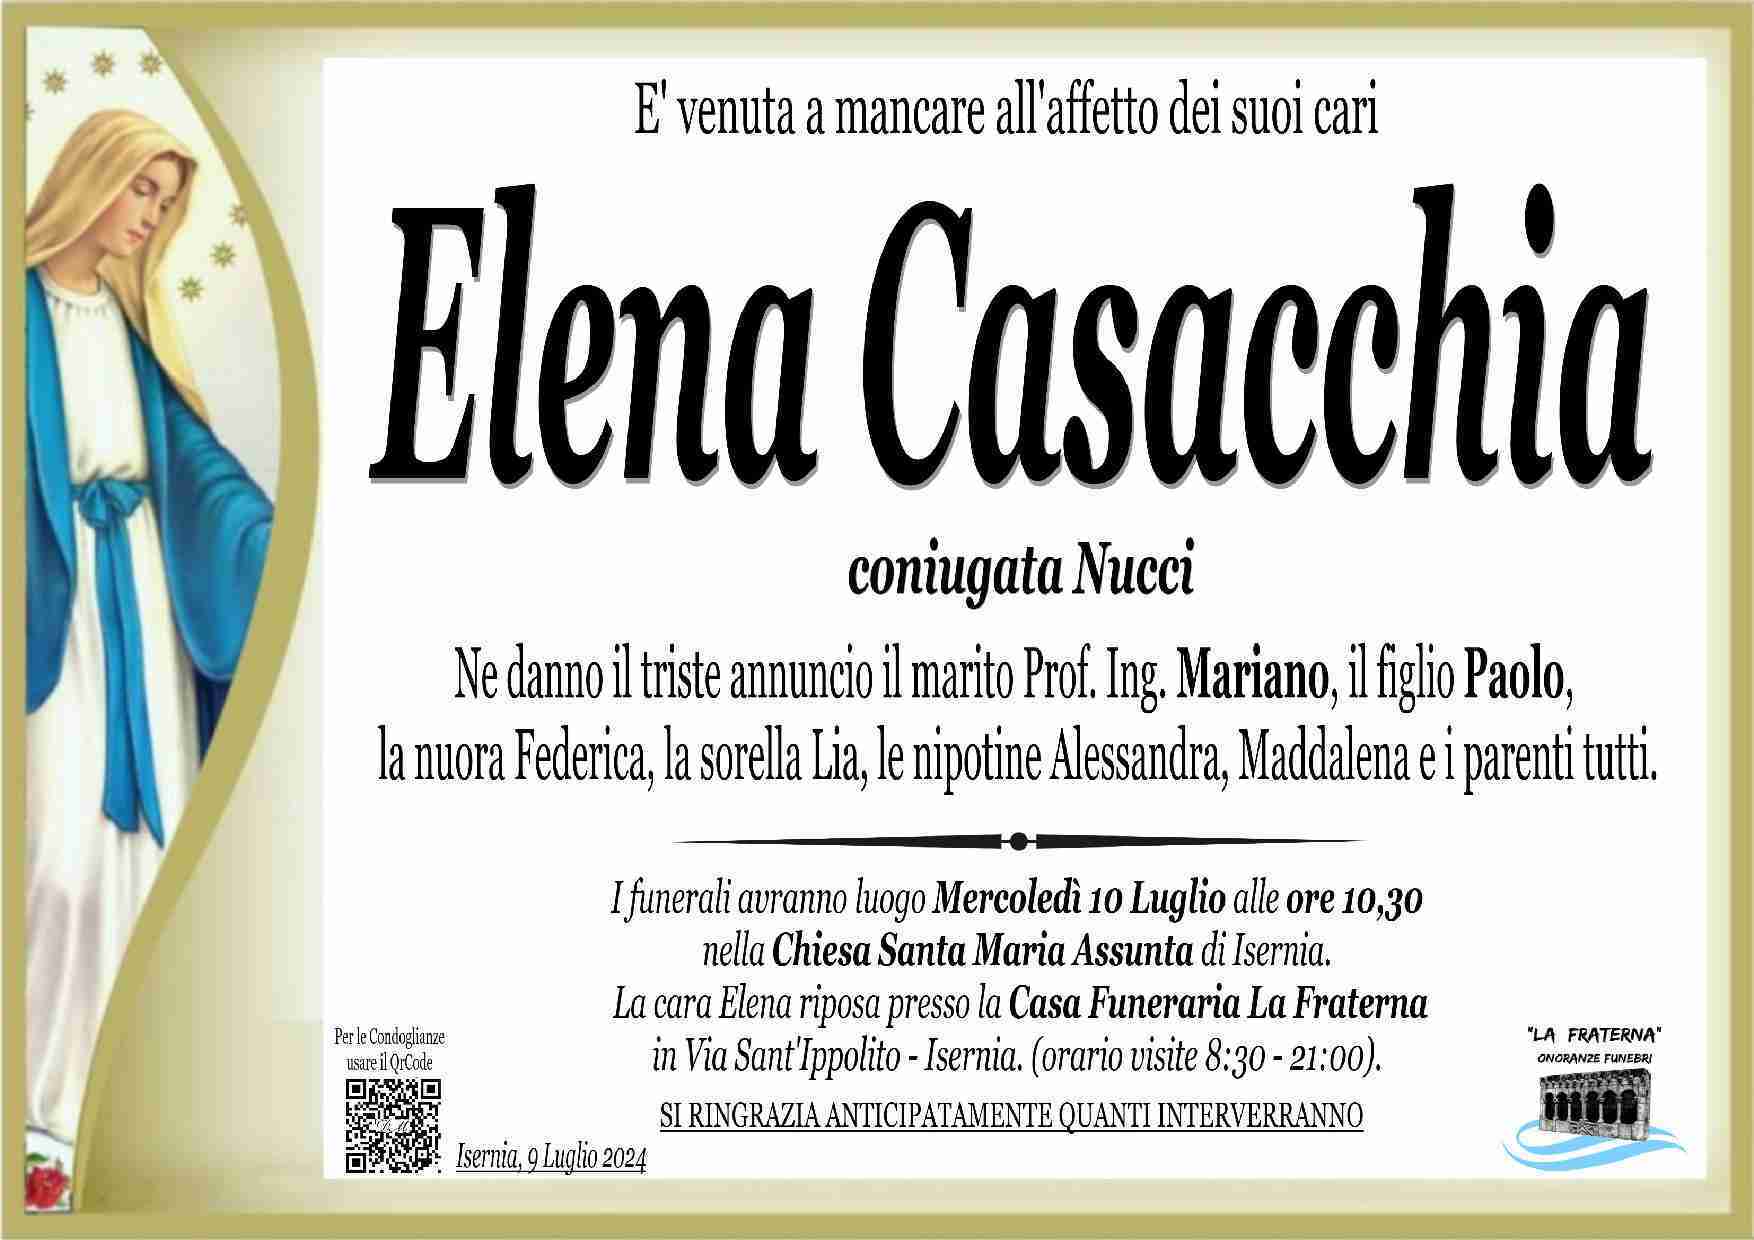 Elena Casacchia